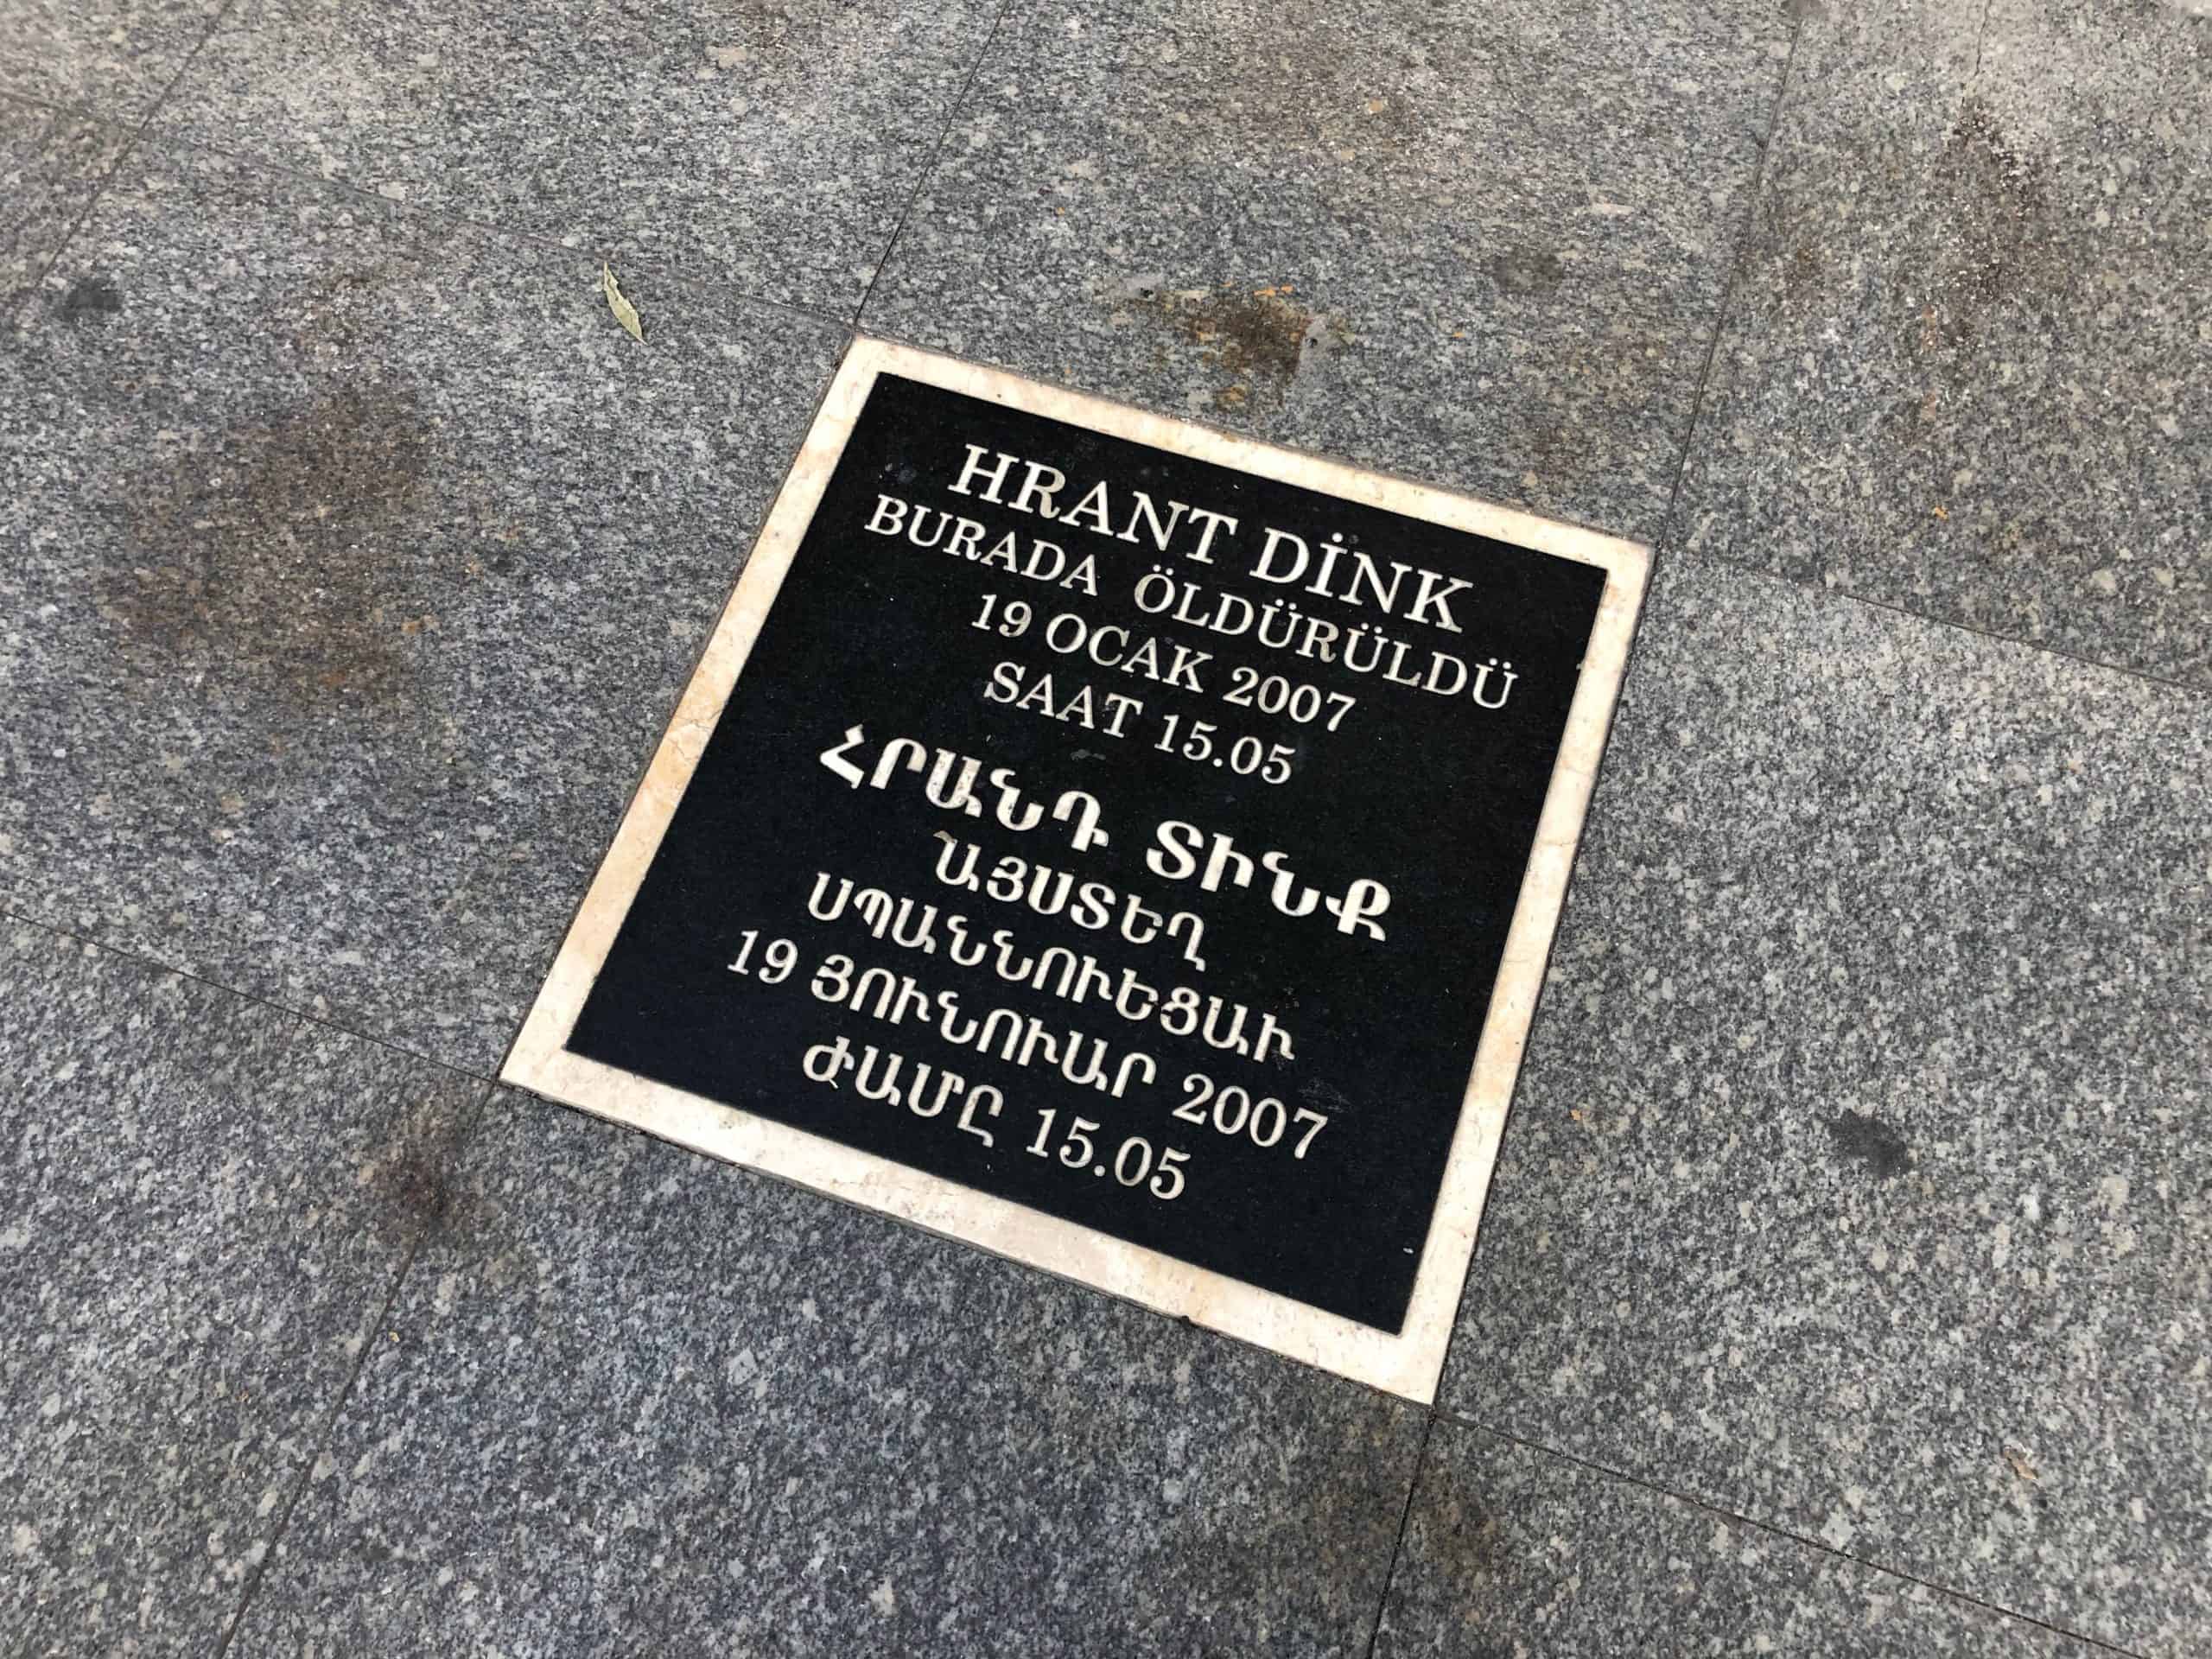 Hrant Dink memorial in Osmanbey, Istanbul, Turkey